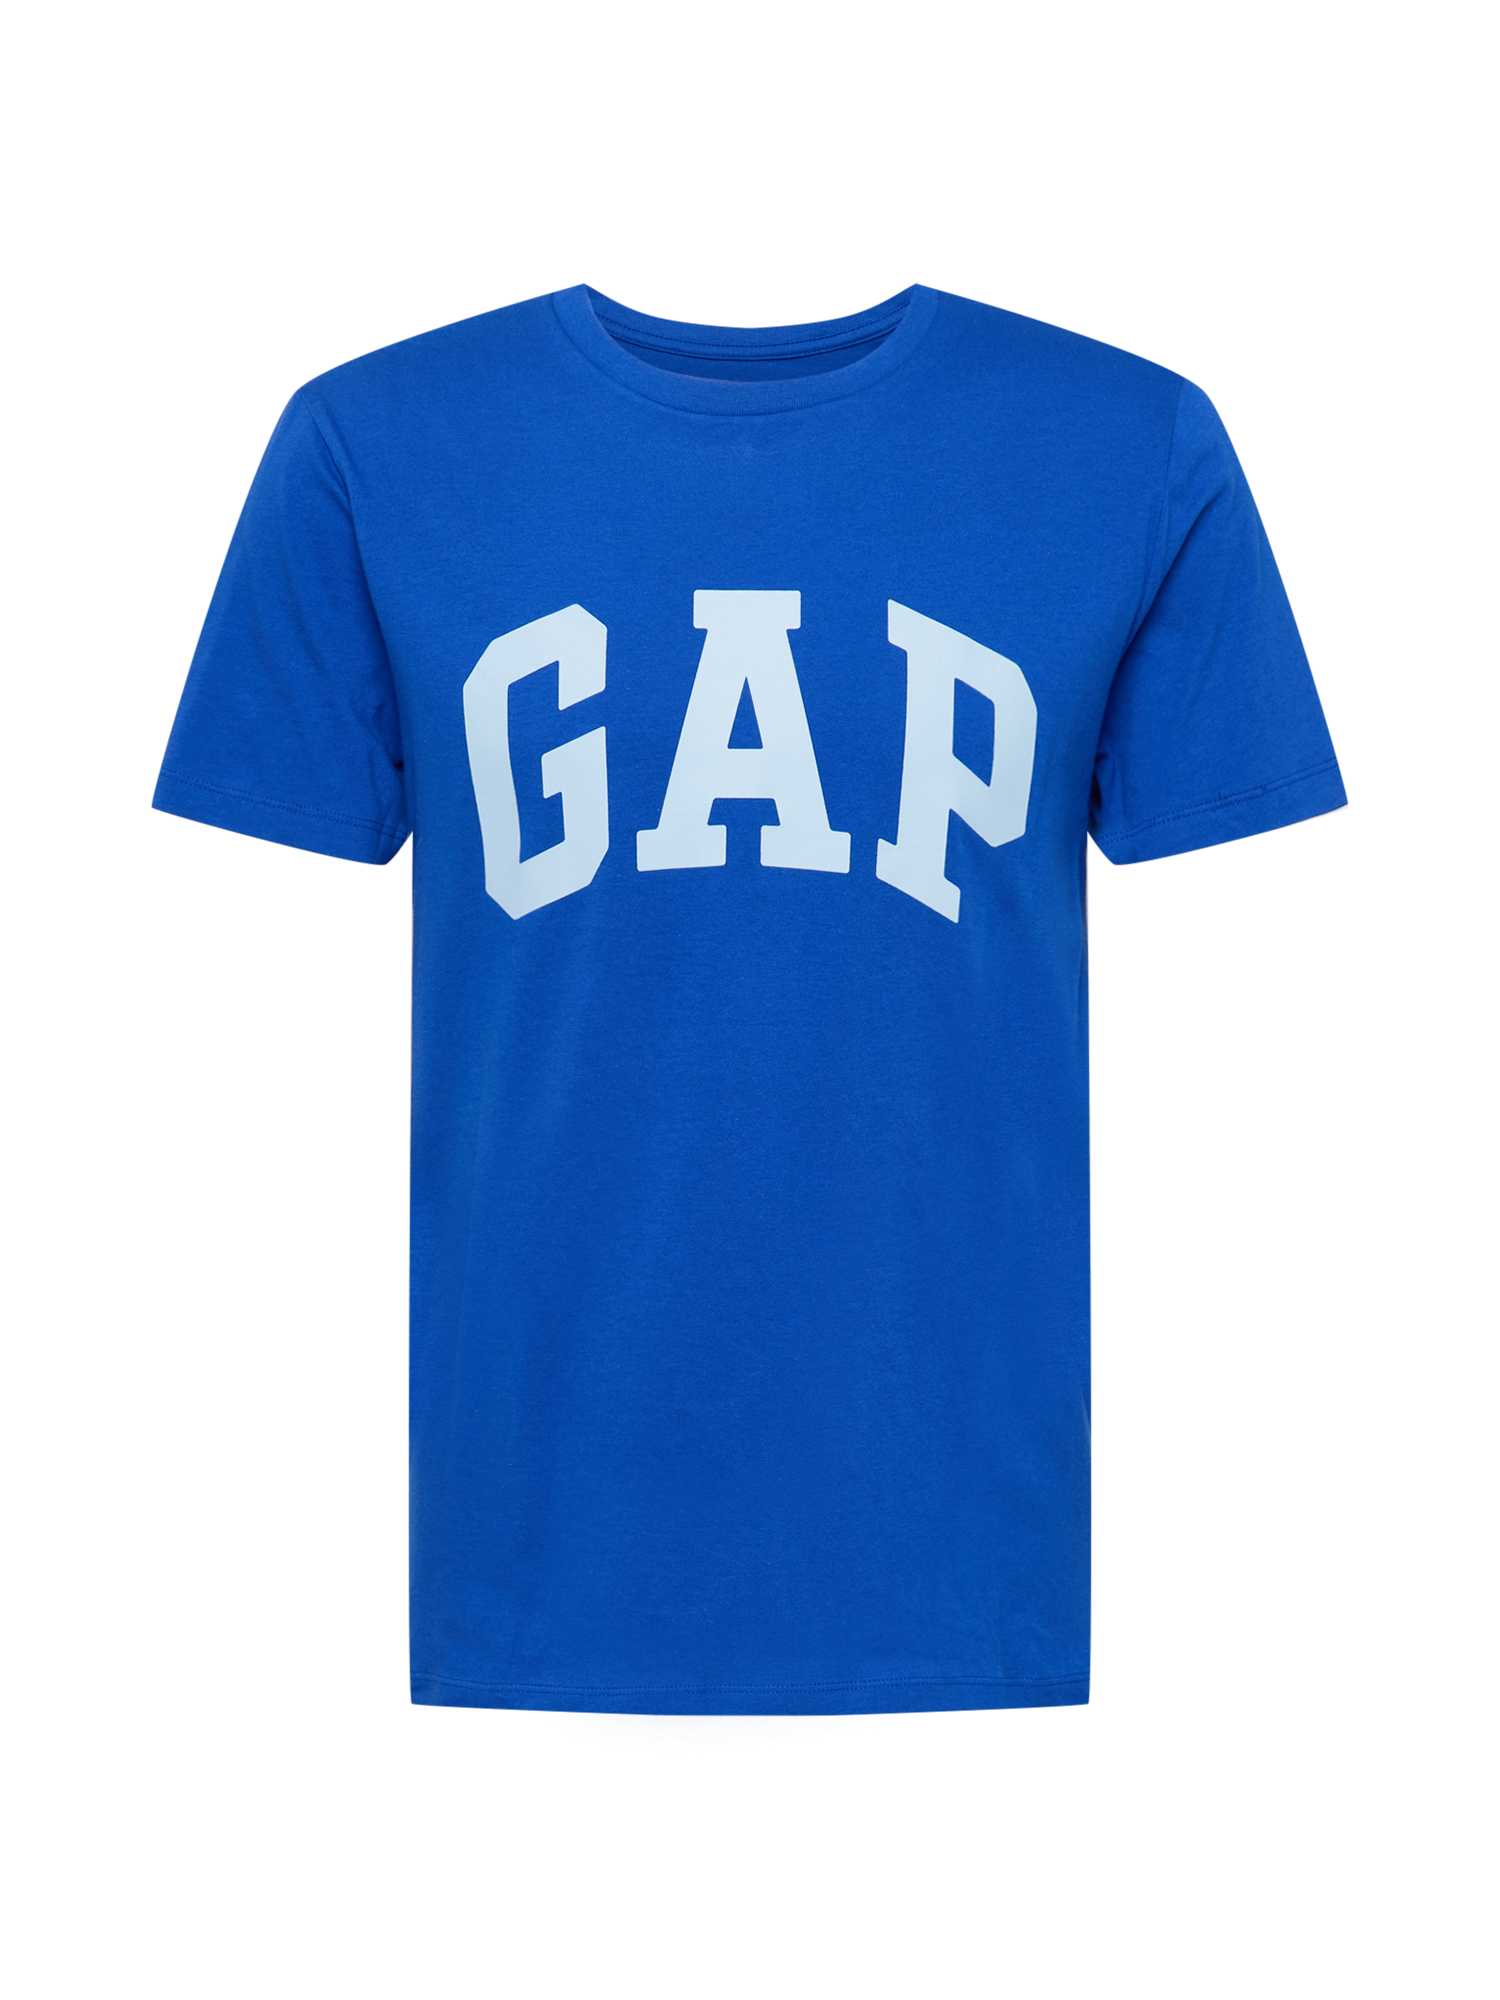 Odzież Mężczyźni GAP Koszulka w kolorze Niebieskim 